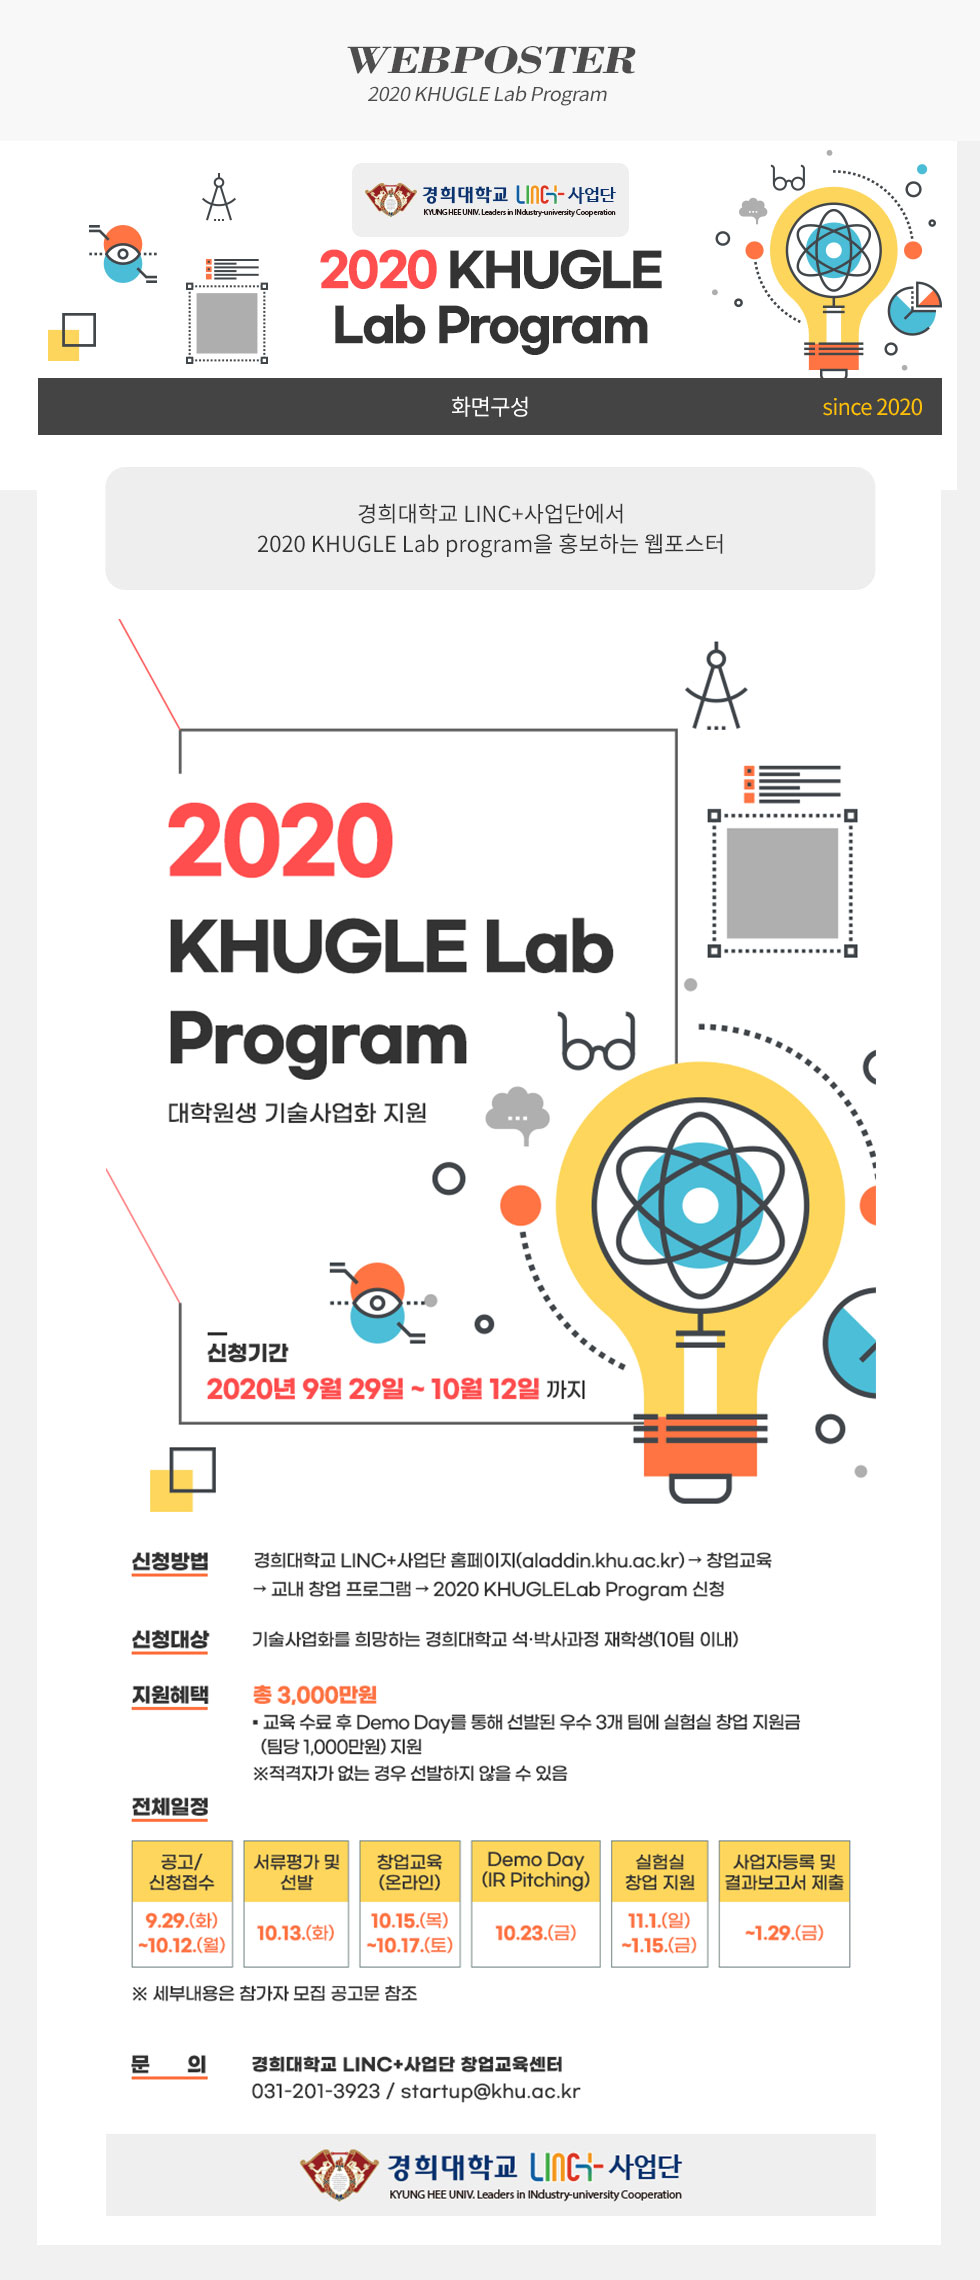 [디자인펌킨 | 2020 KHUGLE Lab Program] 경희대학교/창업교육/교육/창업/프로그램/대학원생/기술사업화/지원/석사/박사/재학생/지원금/포토샵/웹포스터/디자인/디자인펌킨 | 포트폴리오 상세이미지